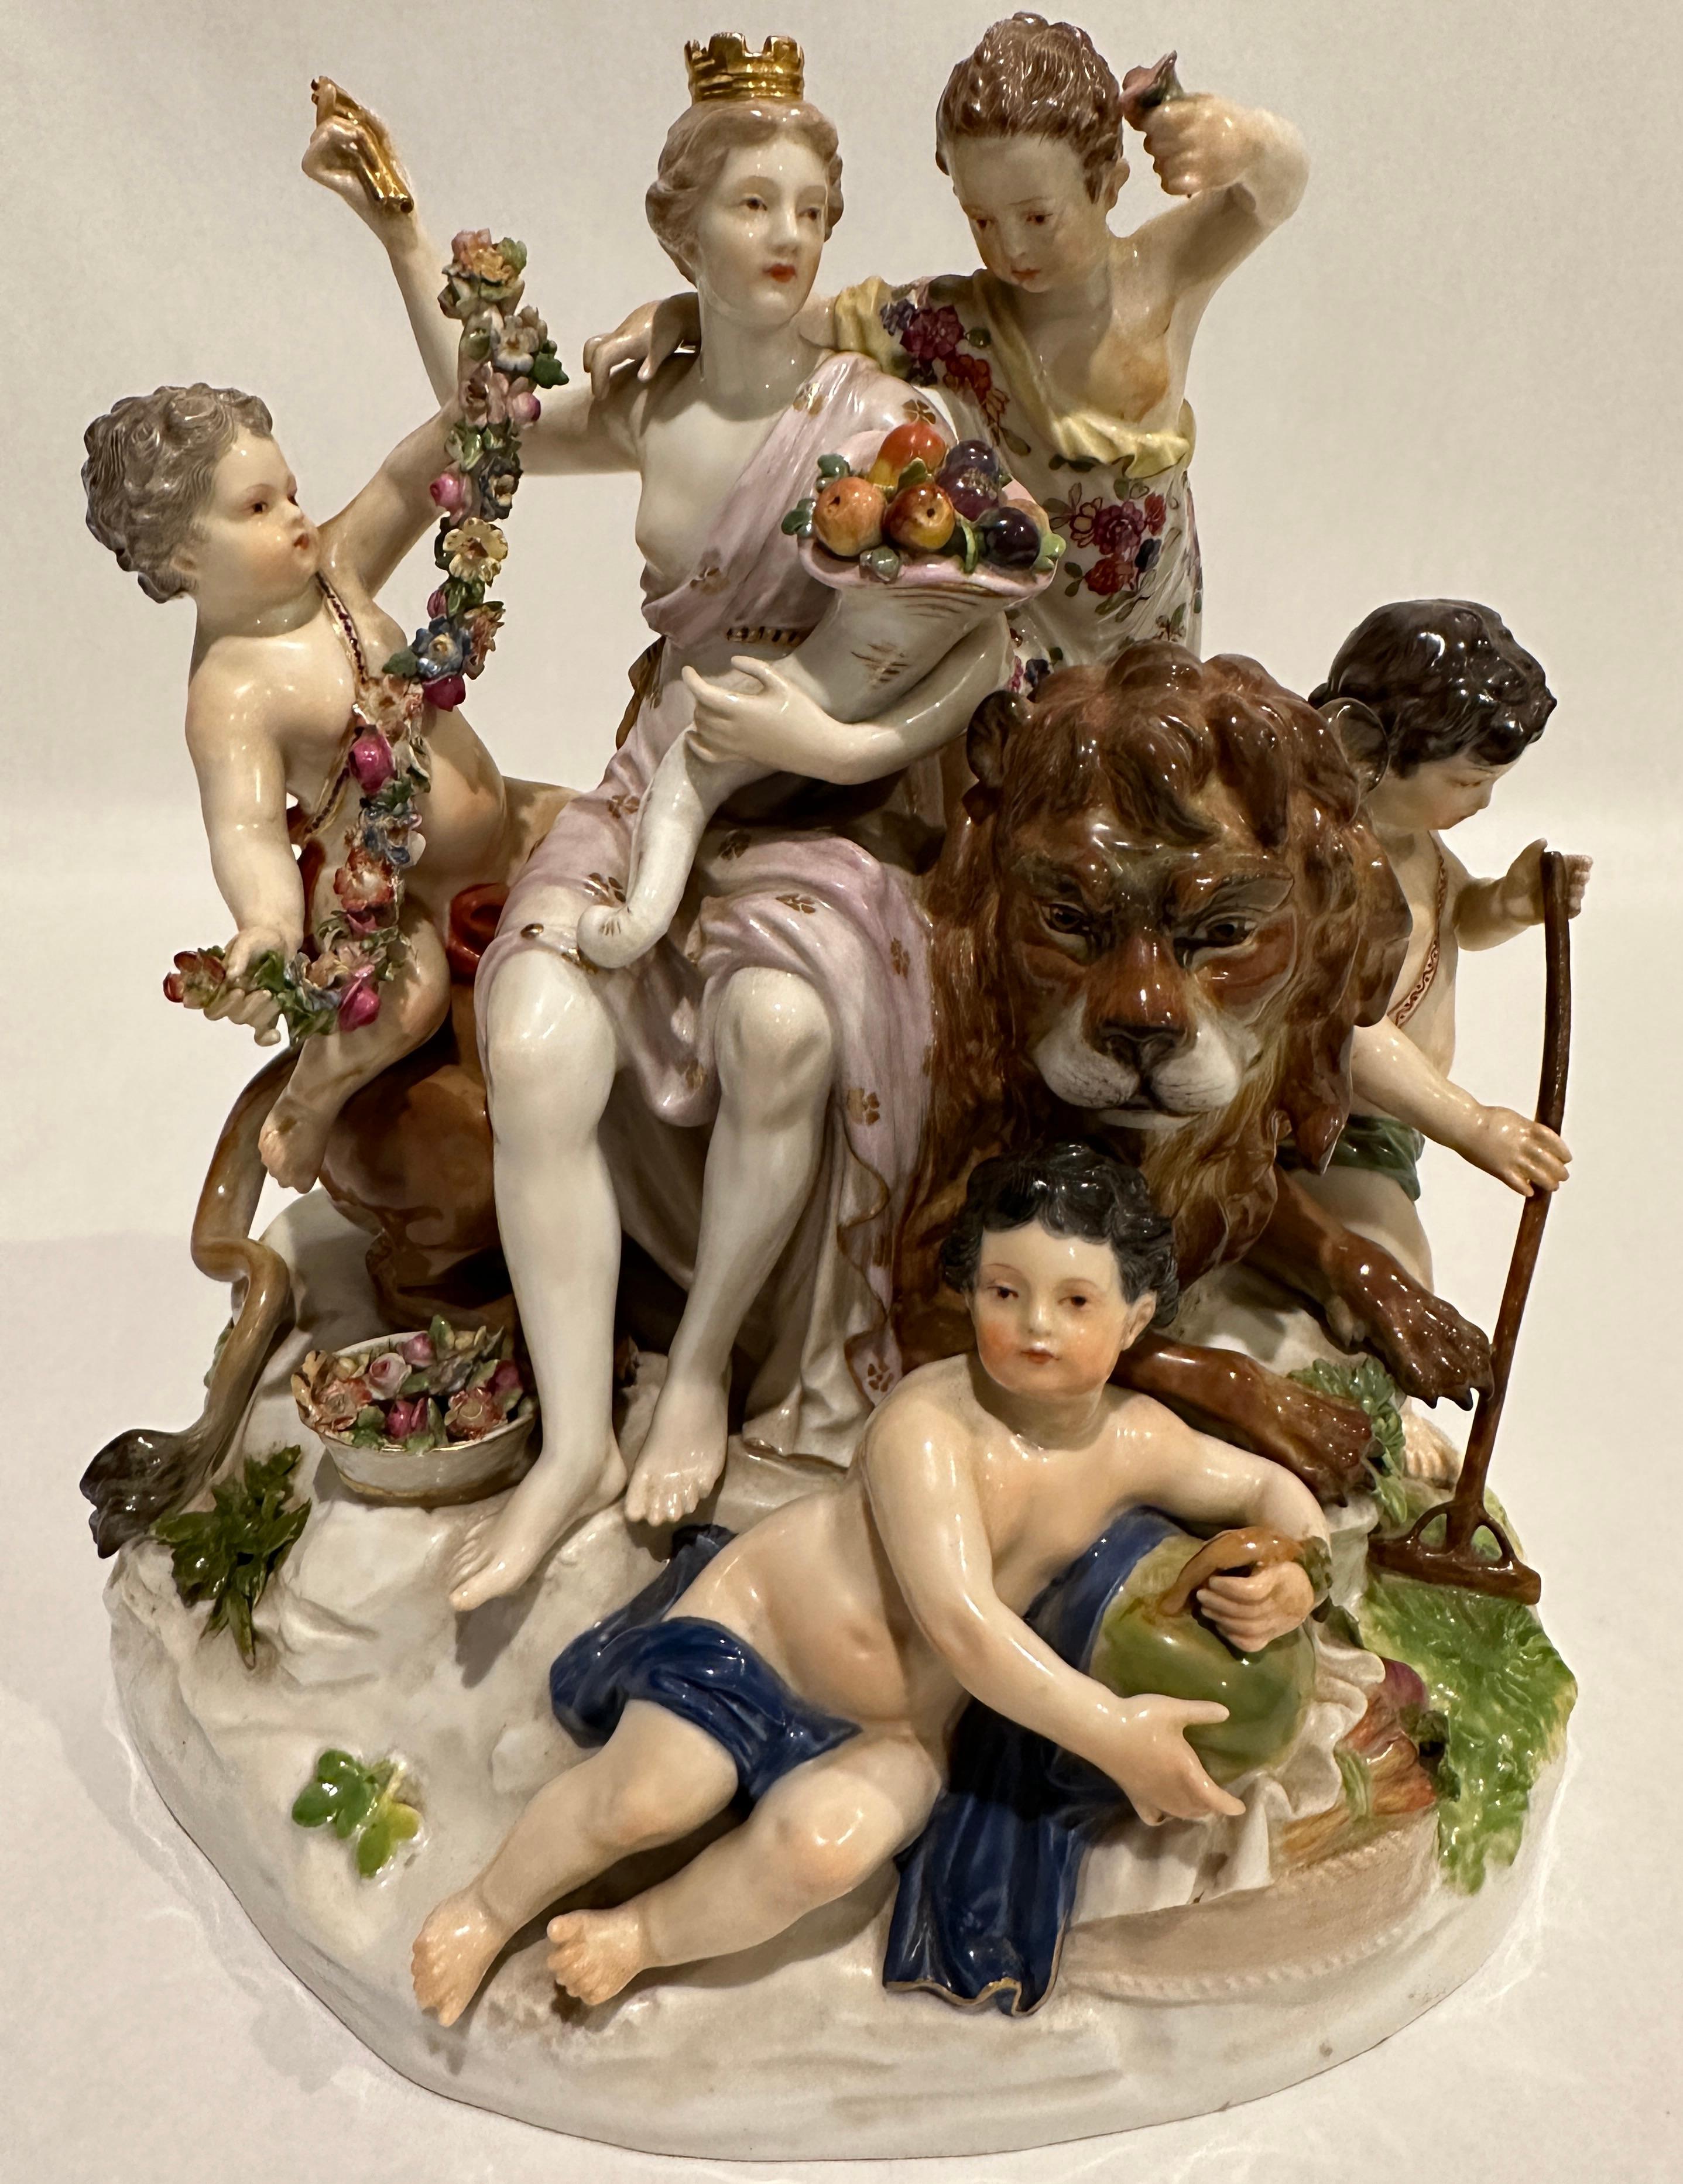 Grand groupe de figurines Meissen représentant l'Allégorie de la Terre autour d'une figurine de lion. 
Manufacture : Meissen Poinçon : Bleu Meissen Marque de l'épée (sous glaçure) Première qualité numéro de modèle D 83 / numéro de peintre 49 /